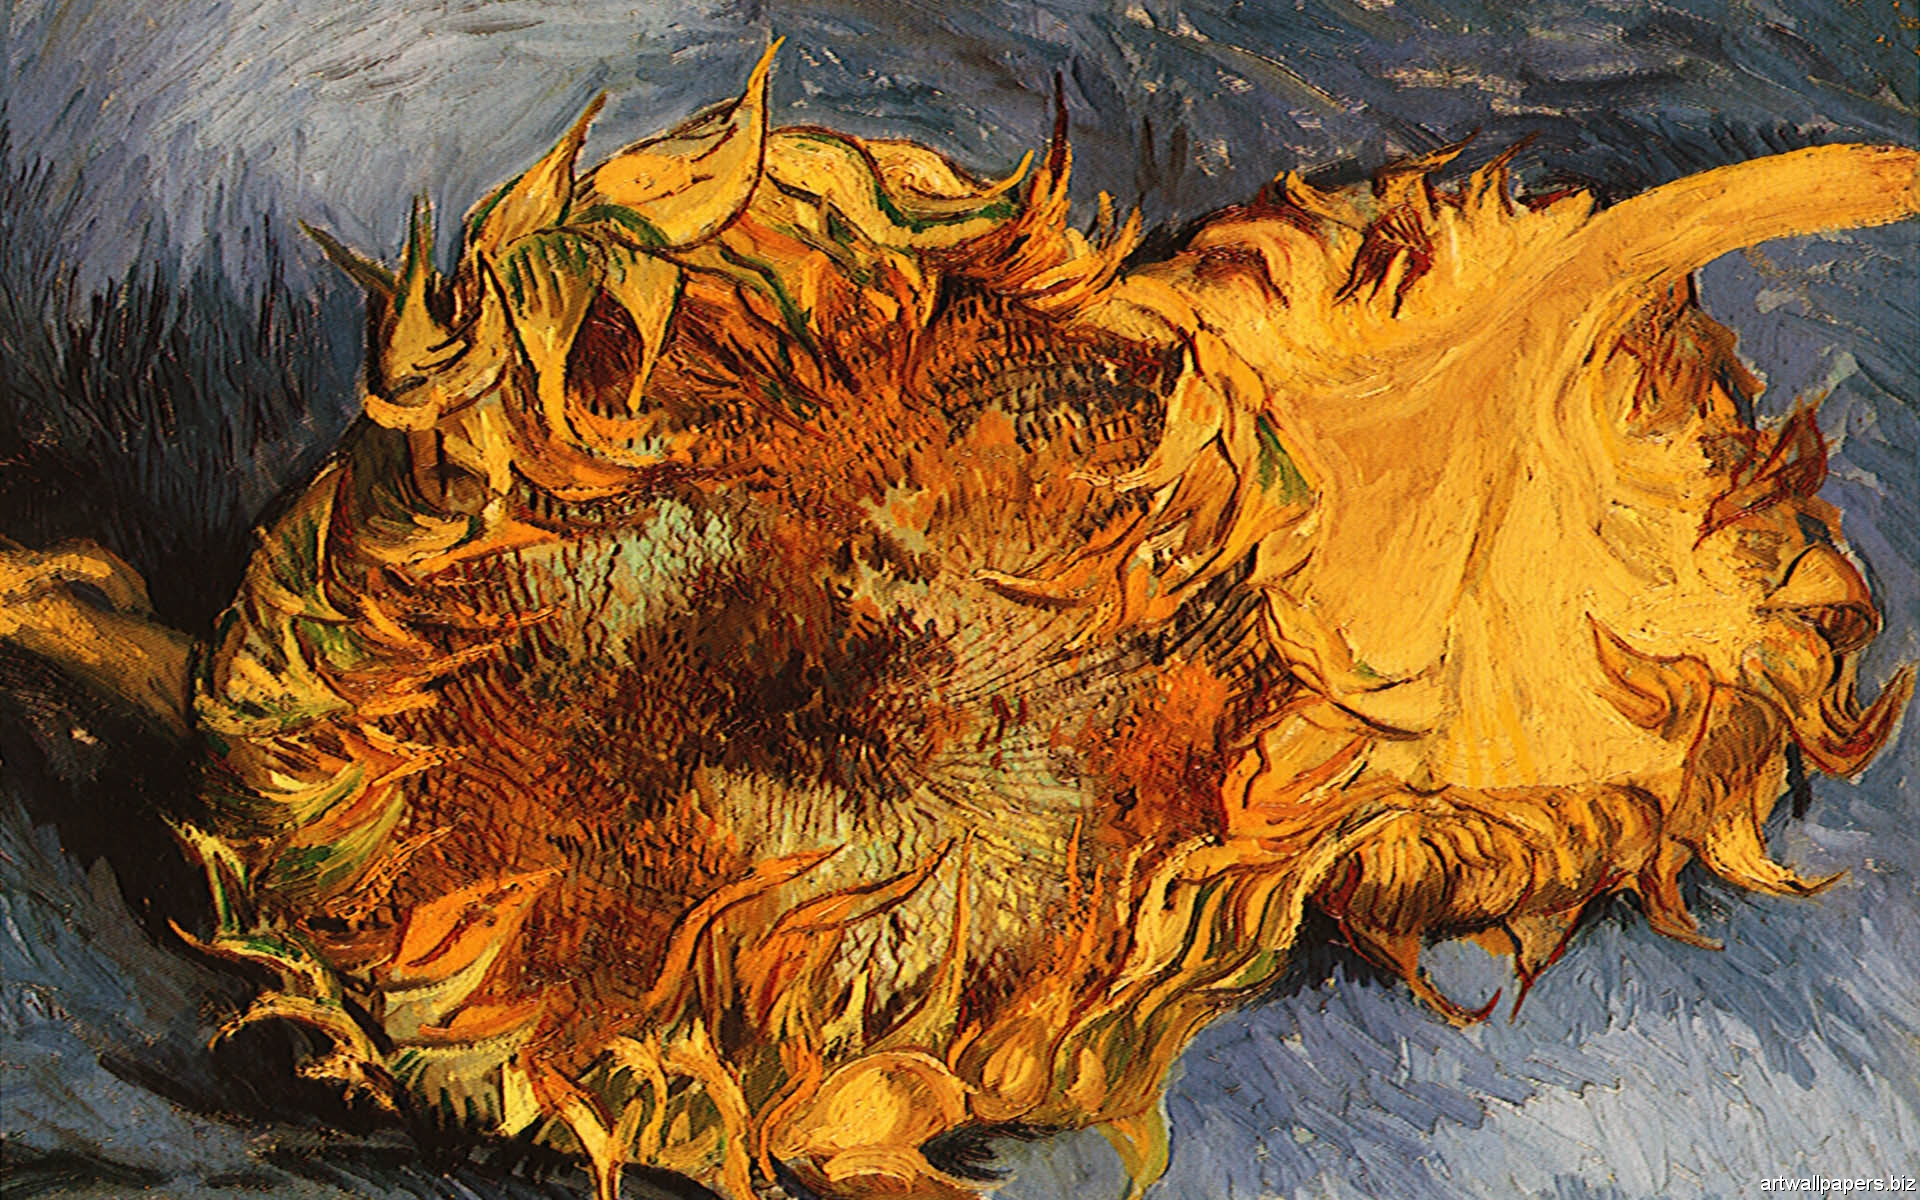 [45+] Van Gogh HD Wallpaper | WallpaperSafari.com